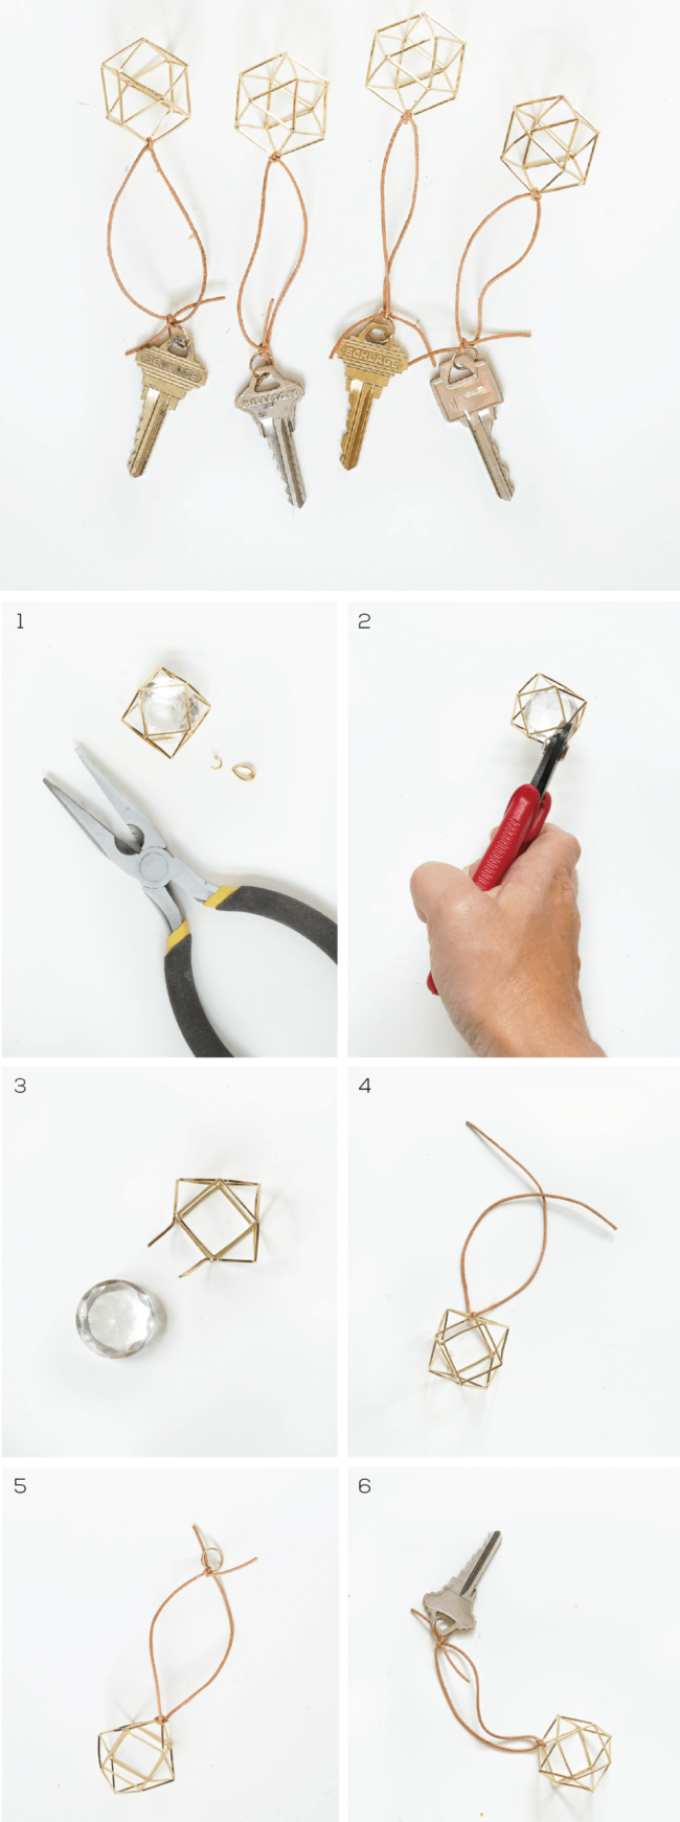 Схема крепления ключей к брелкам для вешалки